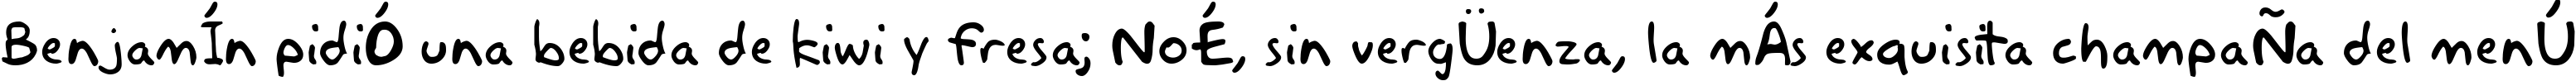 Пример написания шрифтом Akbar Plain текста на испанском